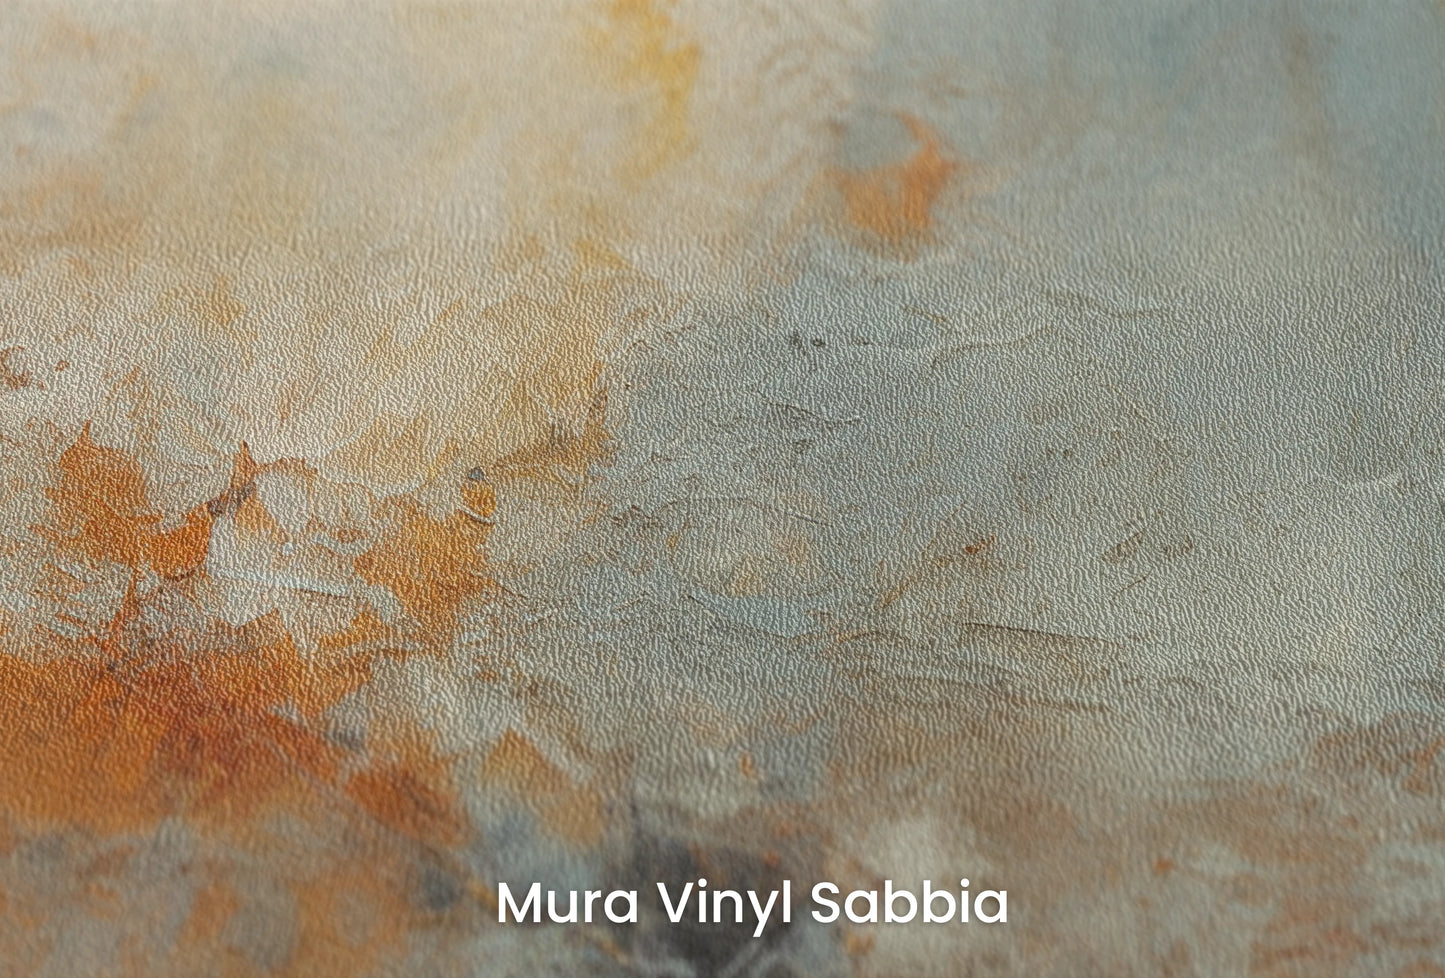 Zbliżenie na artystyczną fototapetę o nazwie Moon's Texture na podłożu Mura Vinyl Sabbia struktura grubego ziarna piasku.